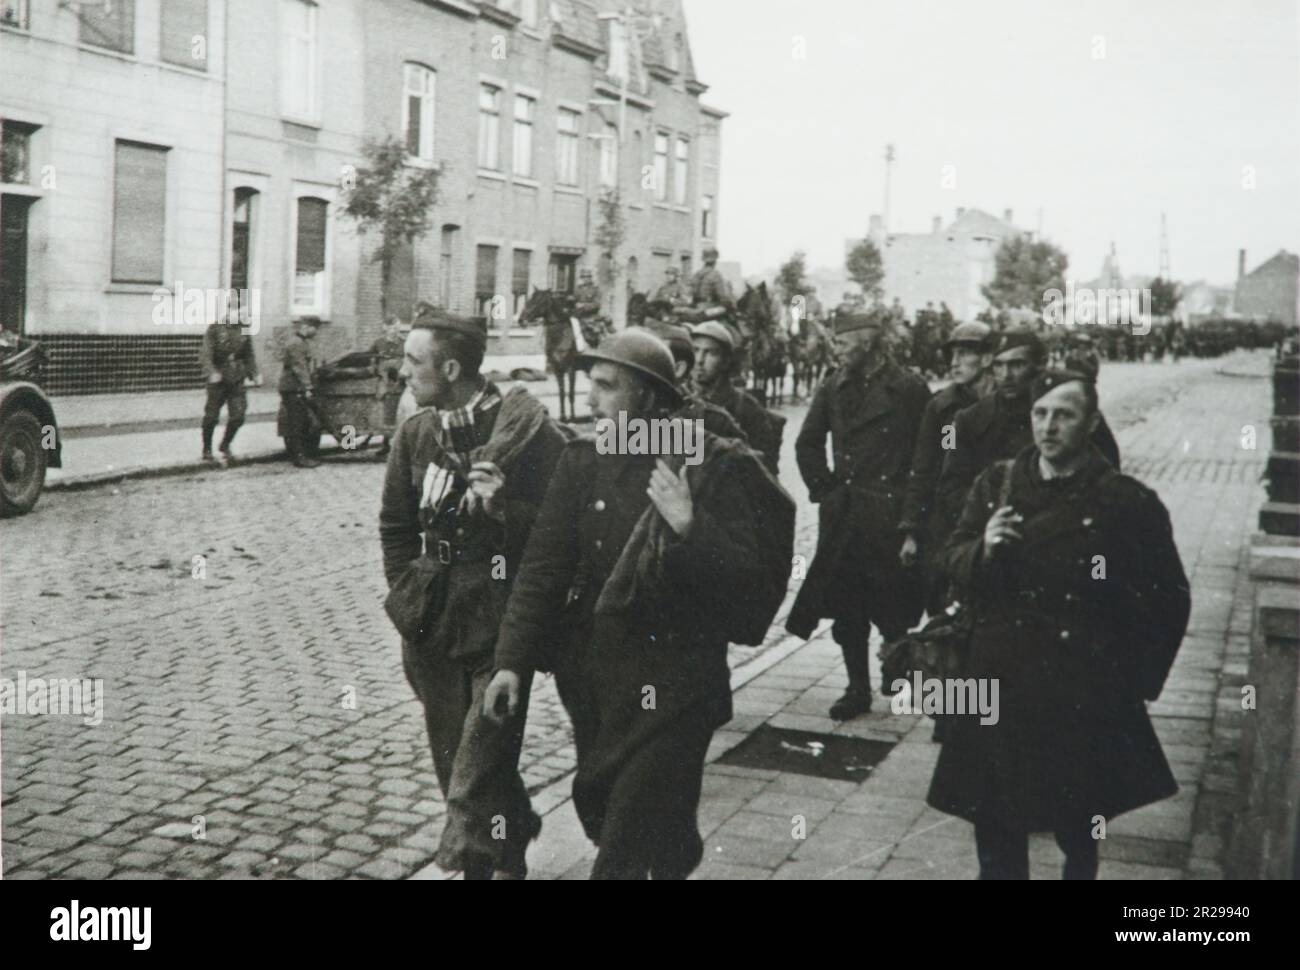 WW2 - Seconde Guerre mondiale , Dunkerque France - les prisonniers de guerre belges - 1940 Banque D'Images